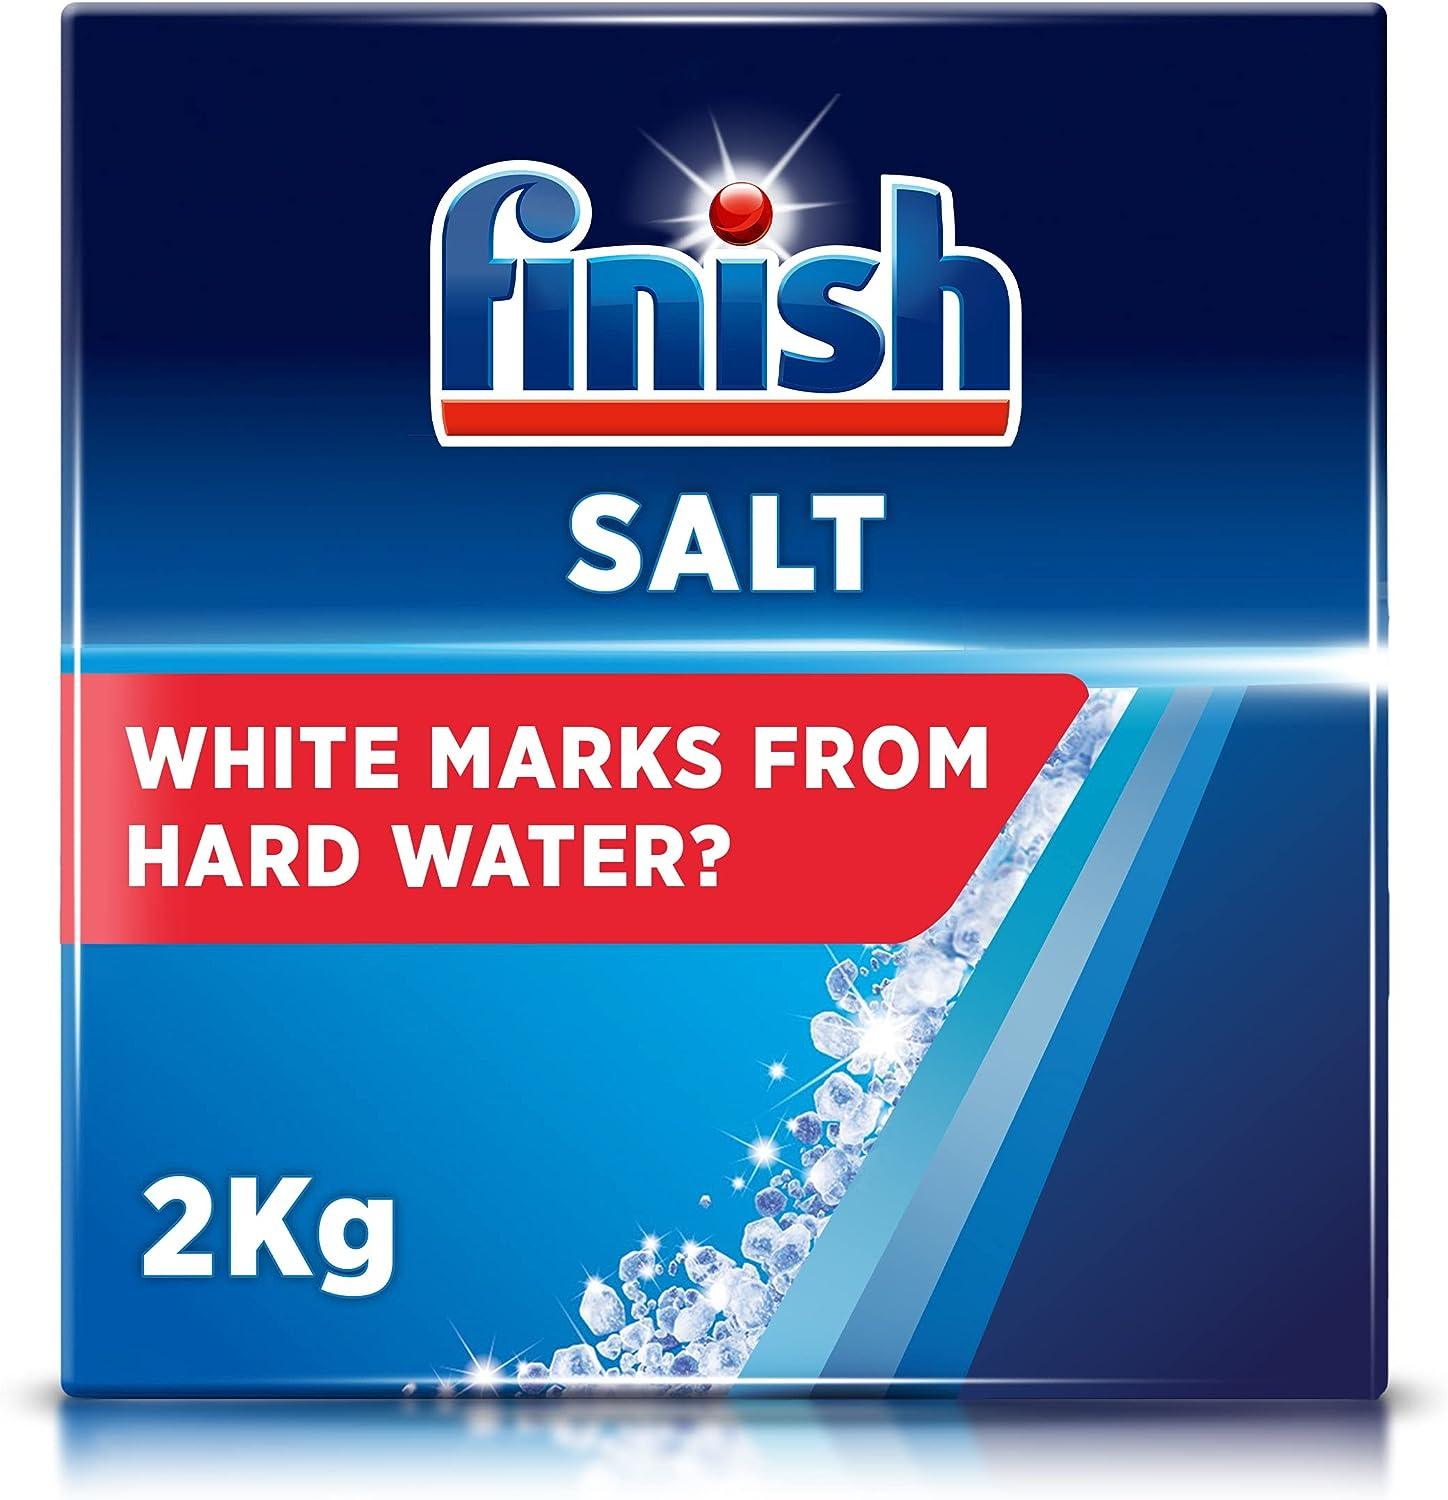 Finish Dishwasher Salt - 2kg - Vending Superstore